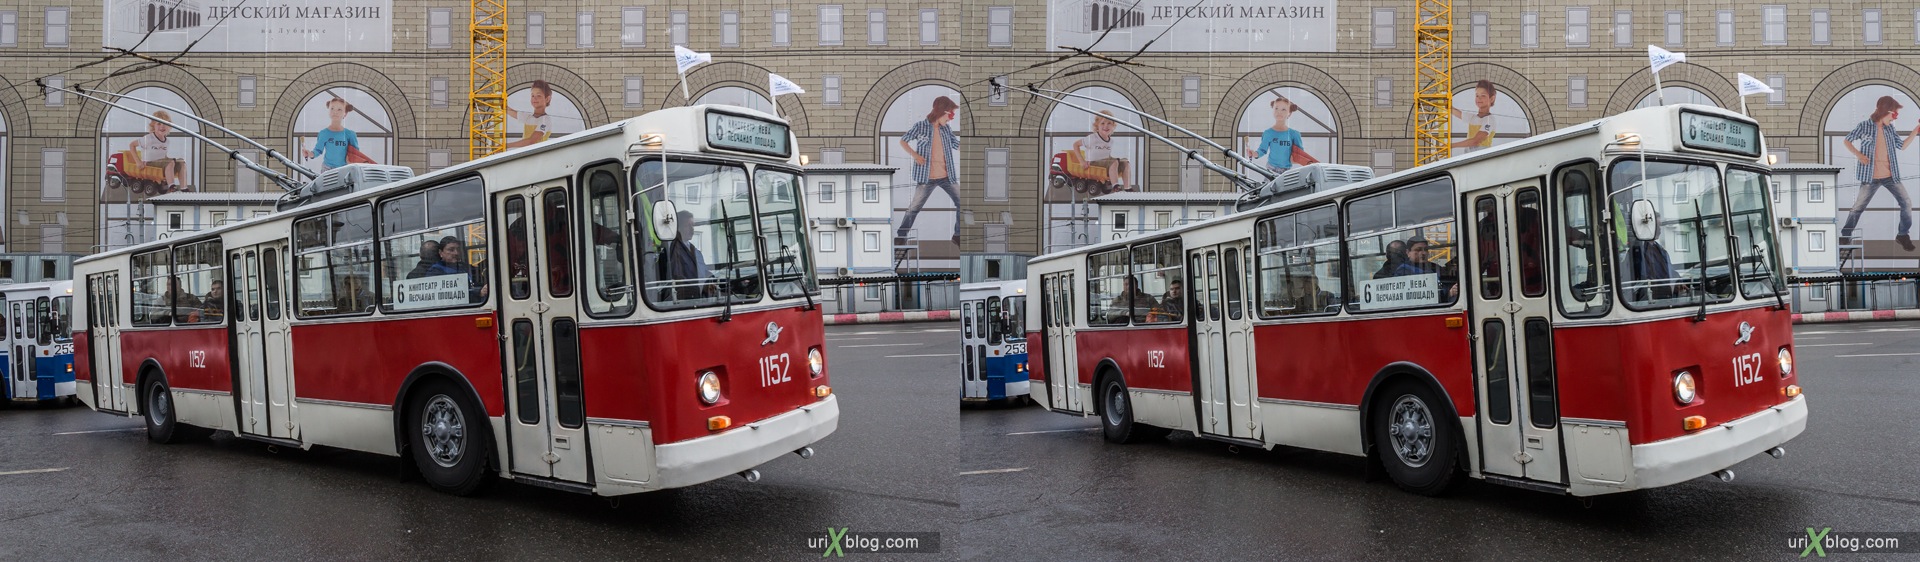 2013, Москва, Парад, старый, старинный, троллейбус, улица, Лубянская площадь, 3D, перекрёстная стереопара, стерео, стереопара